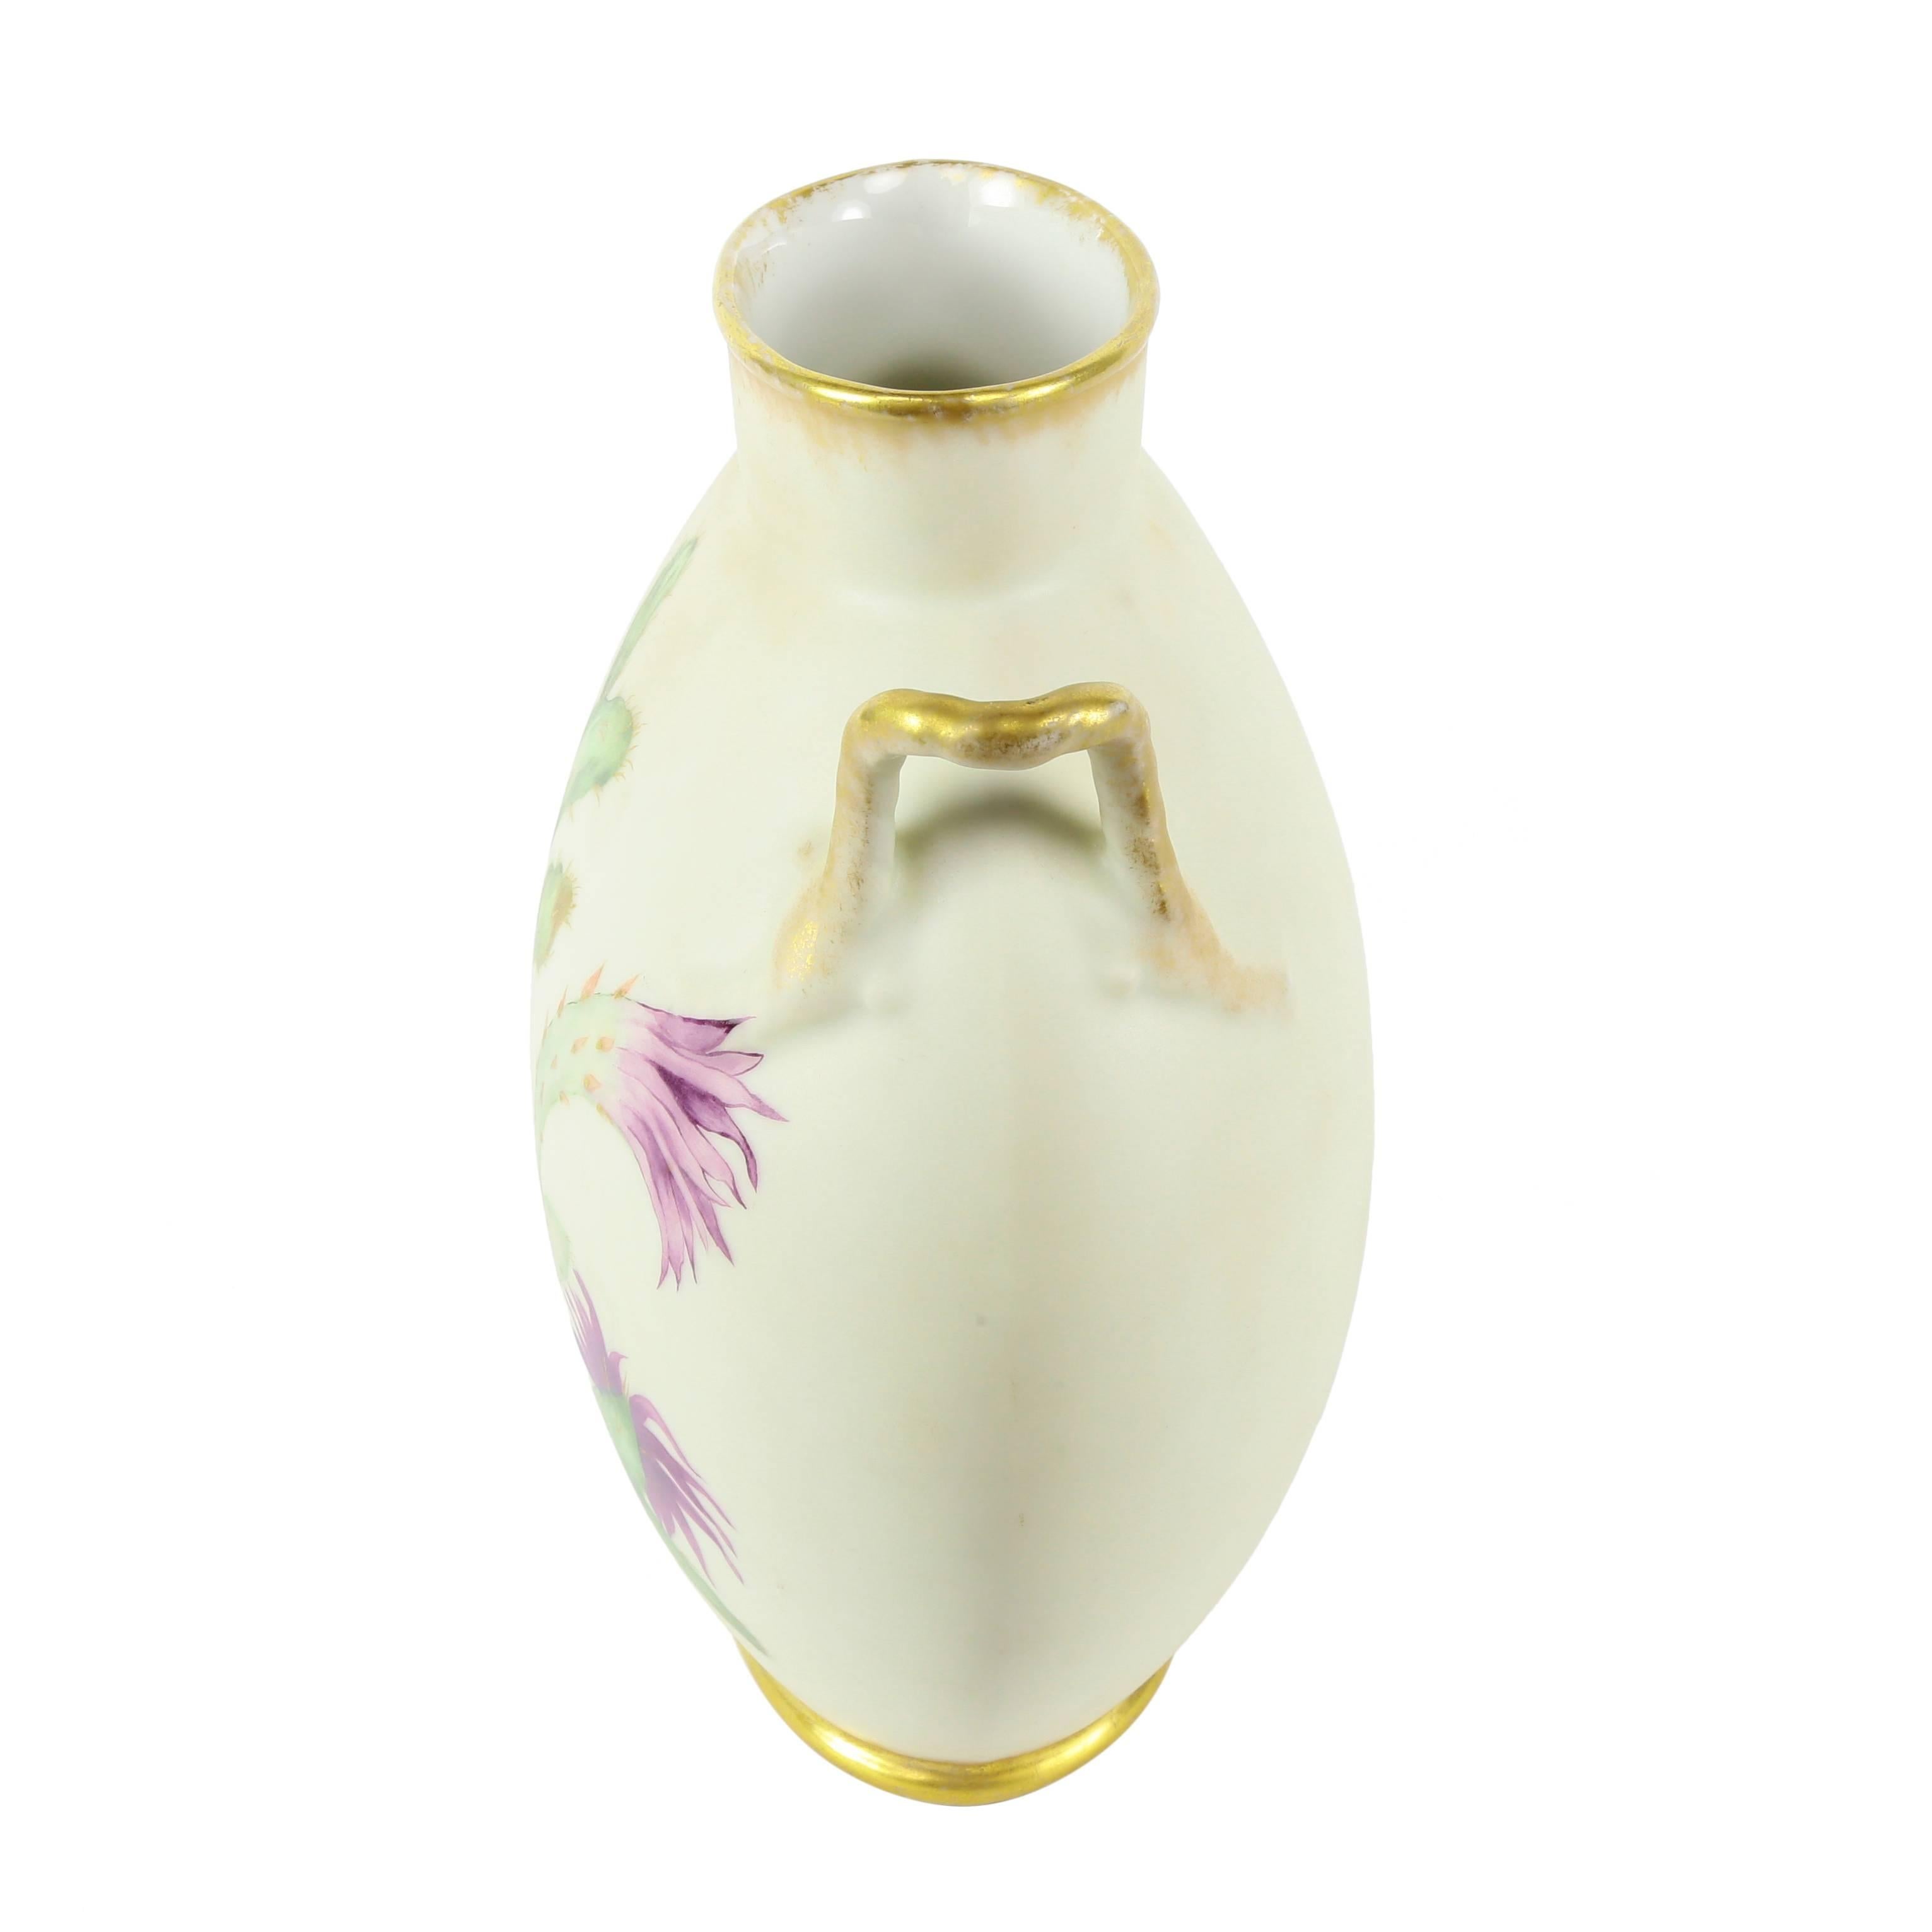 Die Limoges-Porzellan-Kissenvase ist die perfekte Lösung für die Dekoration eines schmalen Raums, z. B. eines Kamins. Handbemaltes Blumen- und Kakteendekor. Die Henkel tragen zur Schönheit und Ausgewogenheit der Vase bei, ca. 1890er Jahre. Eine